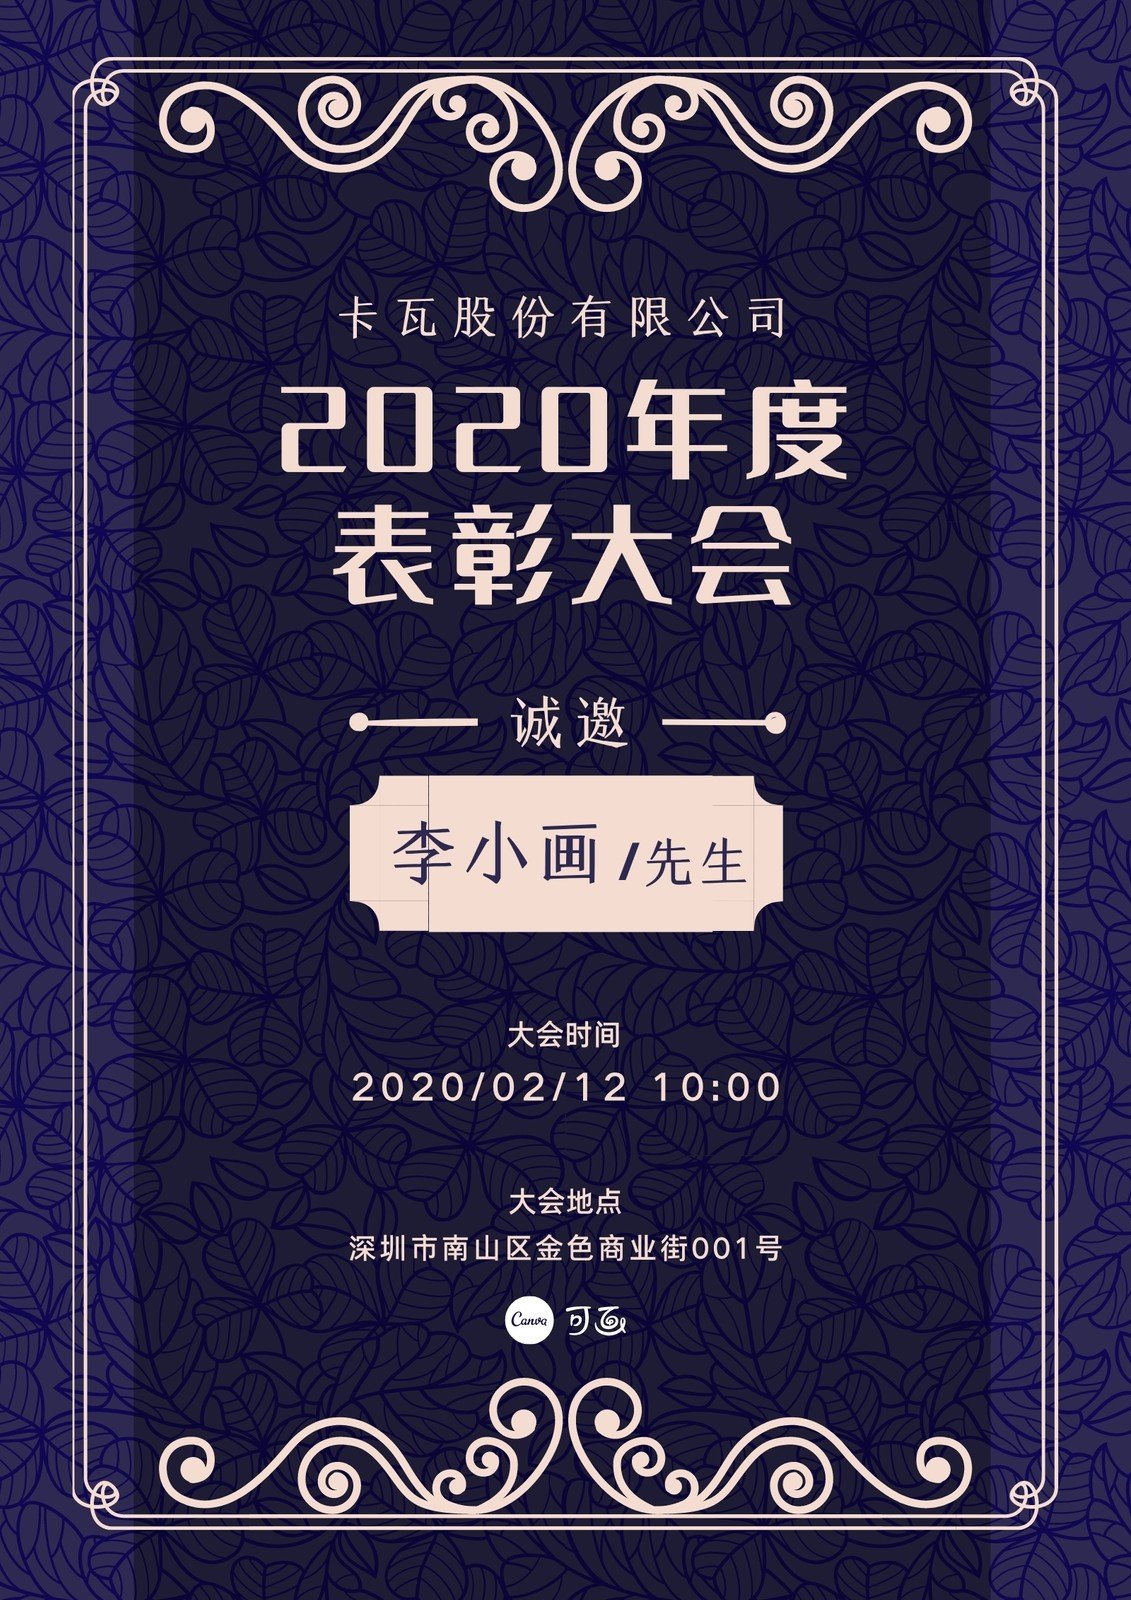 粉紫色花纹边框西式企业分享中文海报